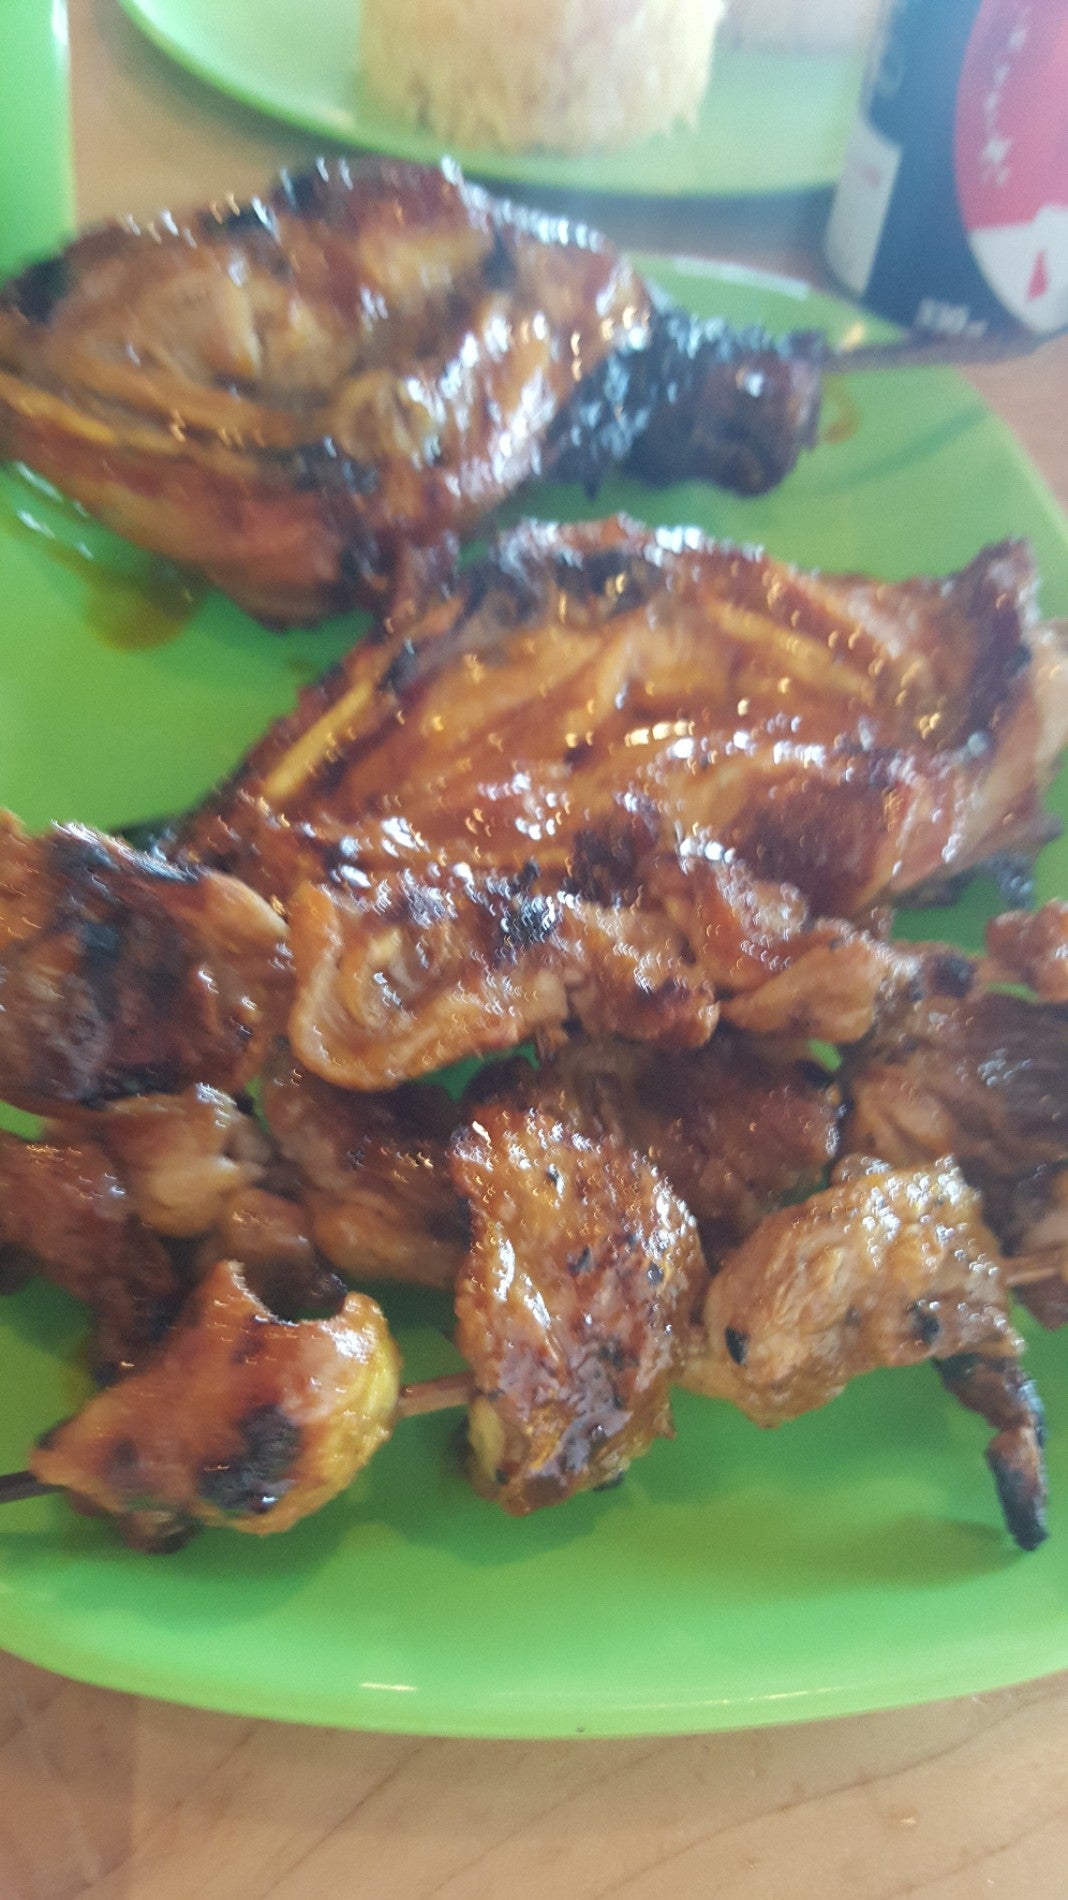 Manong's Original Bacolod Chicken Inasal